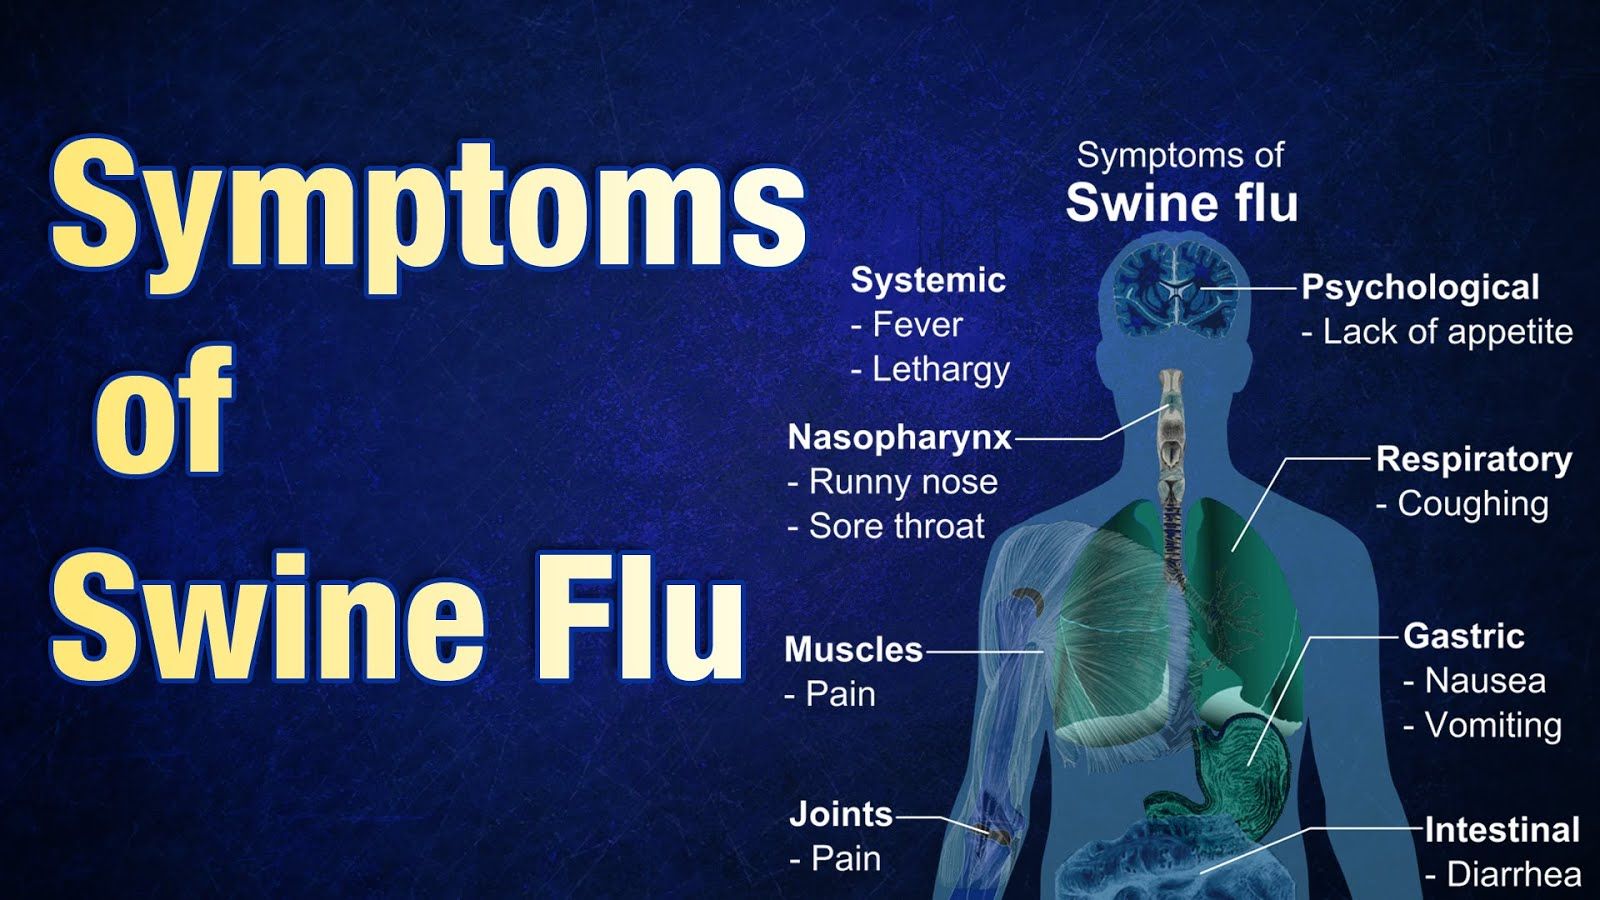 H1N1 “swine flu” virus outbreak in Ethiopia